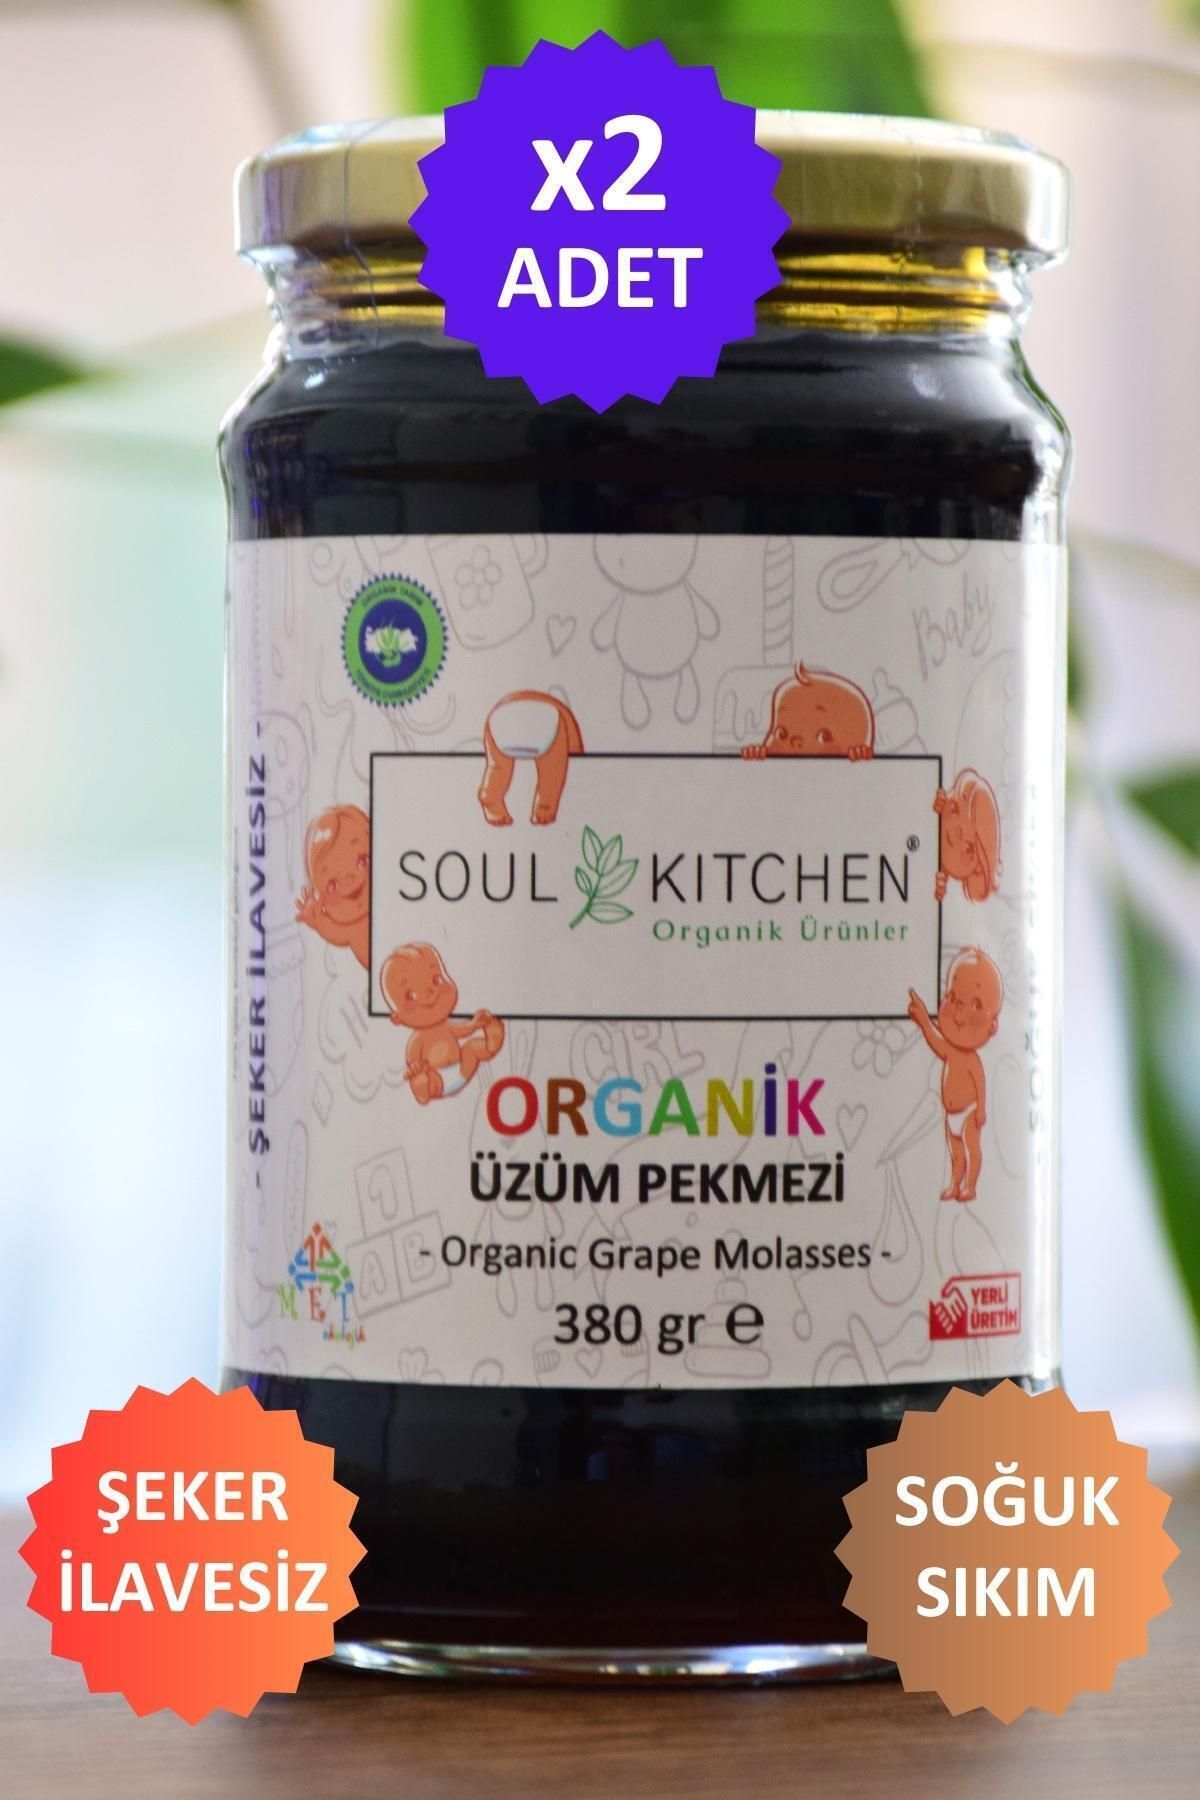 Soul Kitchen Organik Ürünler Organik Bebek Üzüm Pekmezi (Soğuk Sıkım) (Şeker İlavesiz) 380gr 2'li eko paket